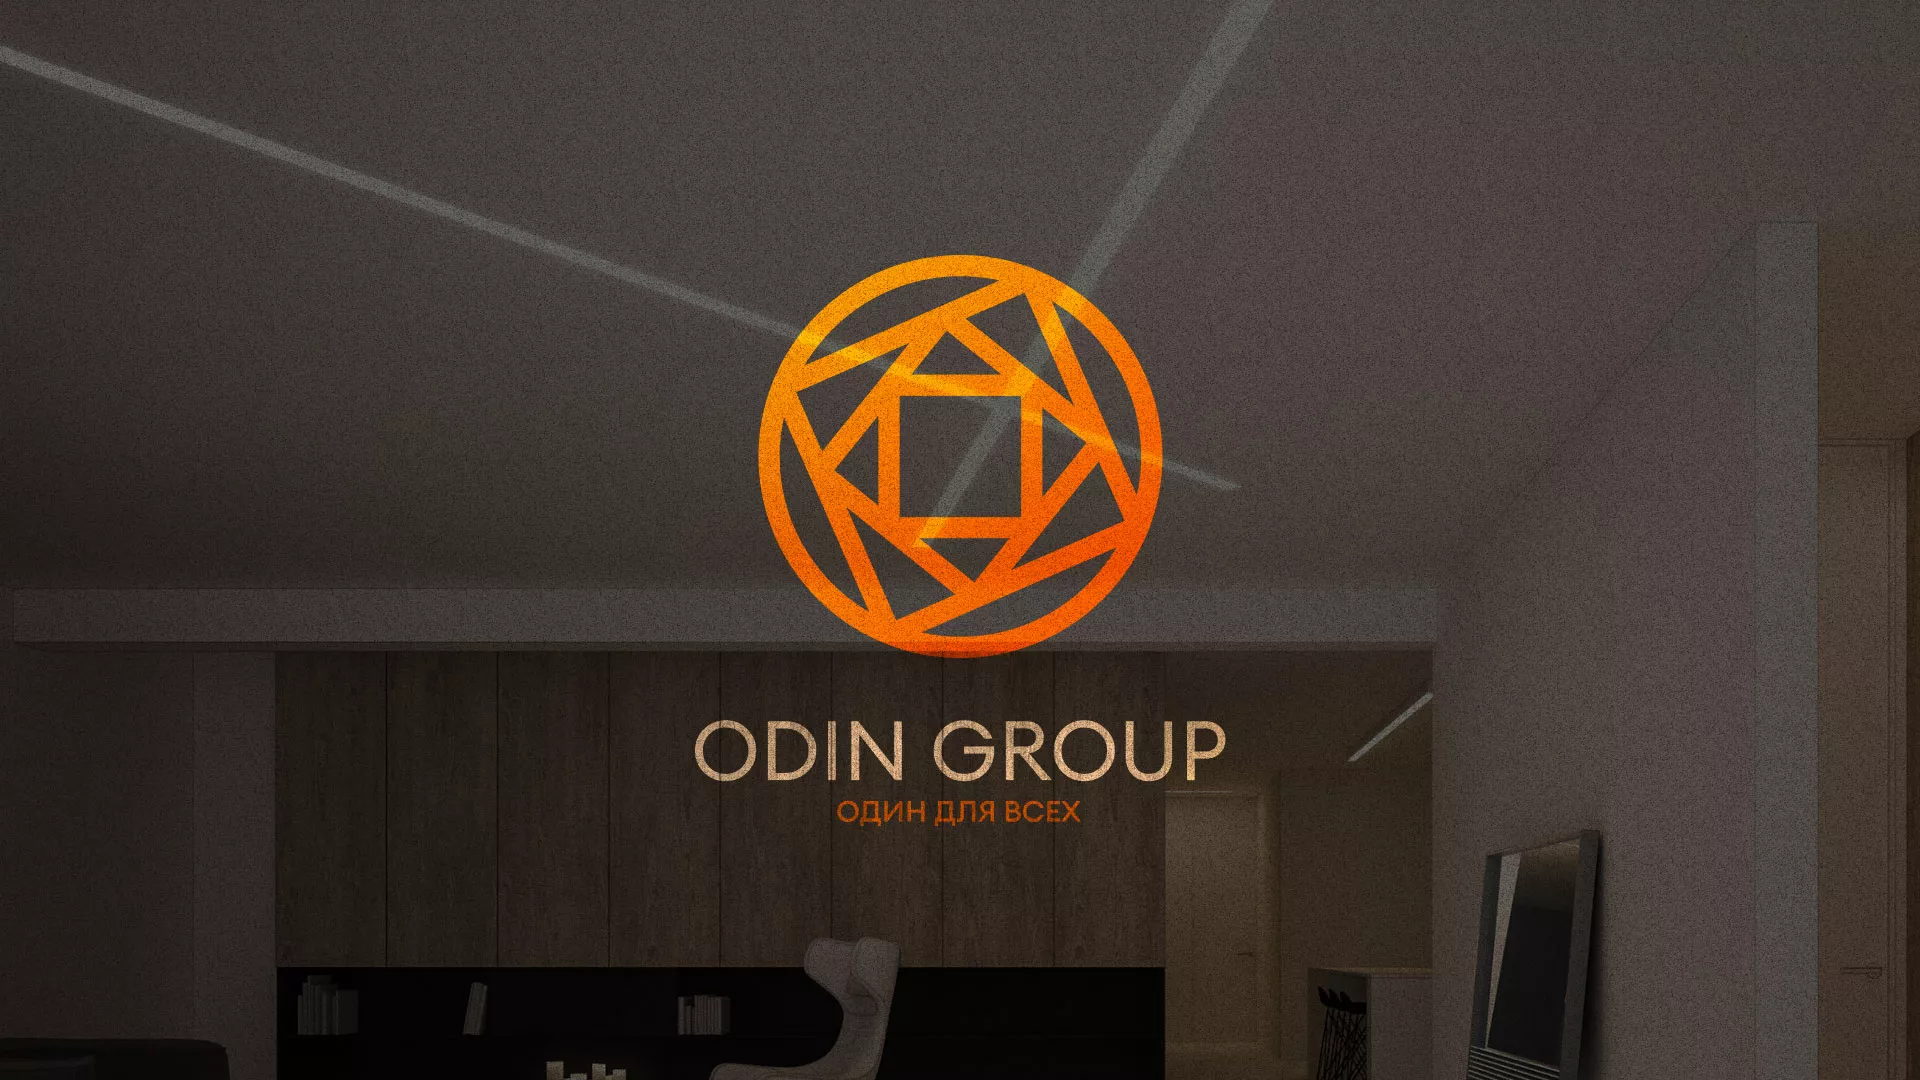 Разработка сайта в Ладушкине для компании «ODIN GROUP» по установке натяжных потолков